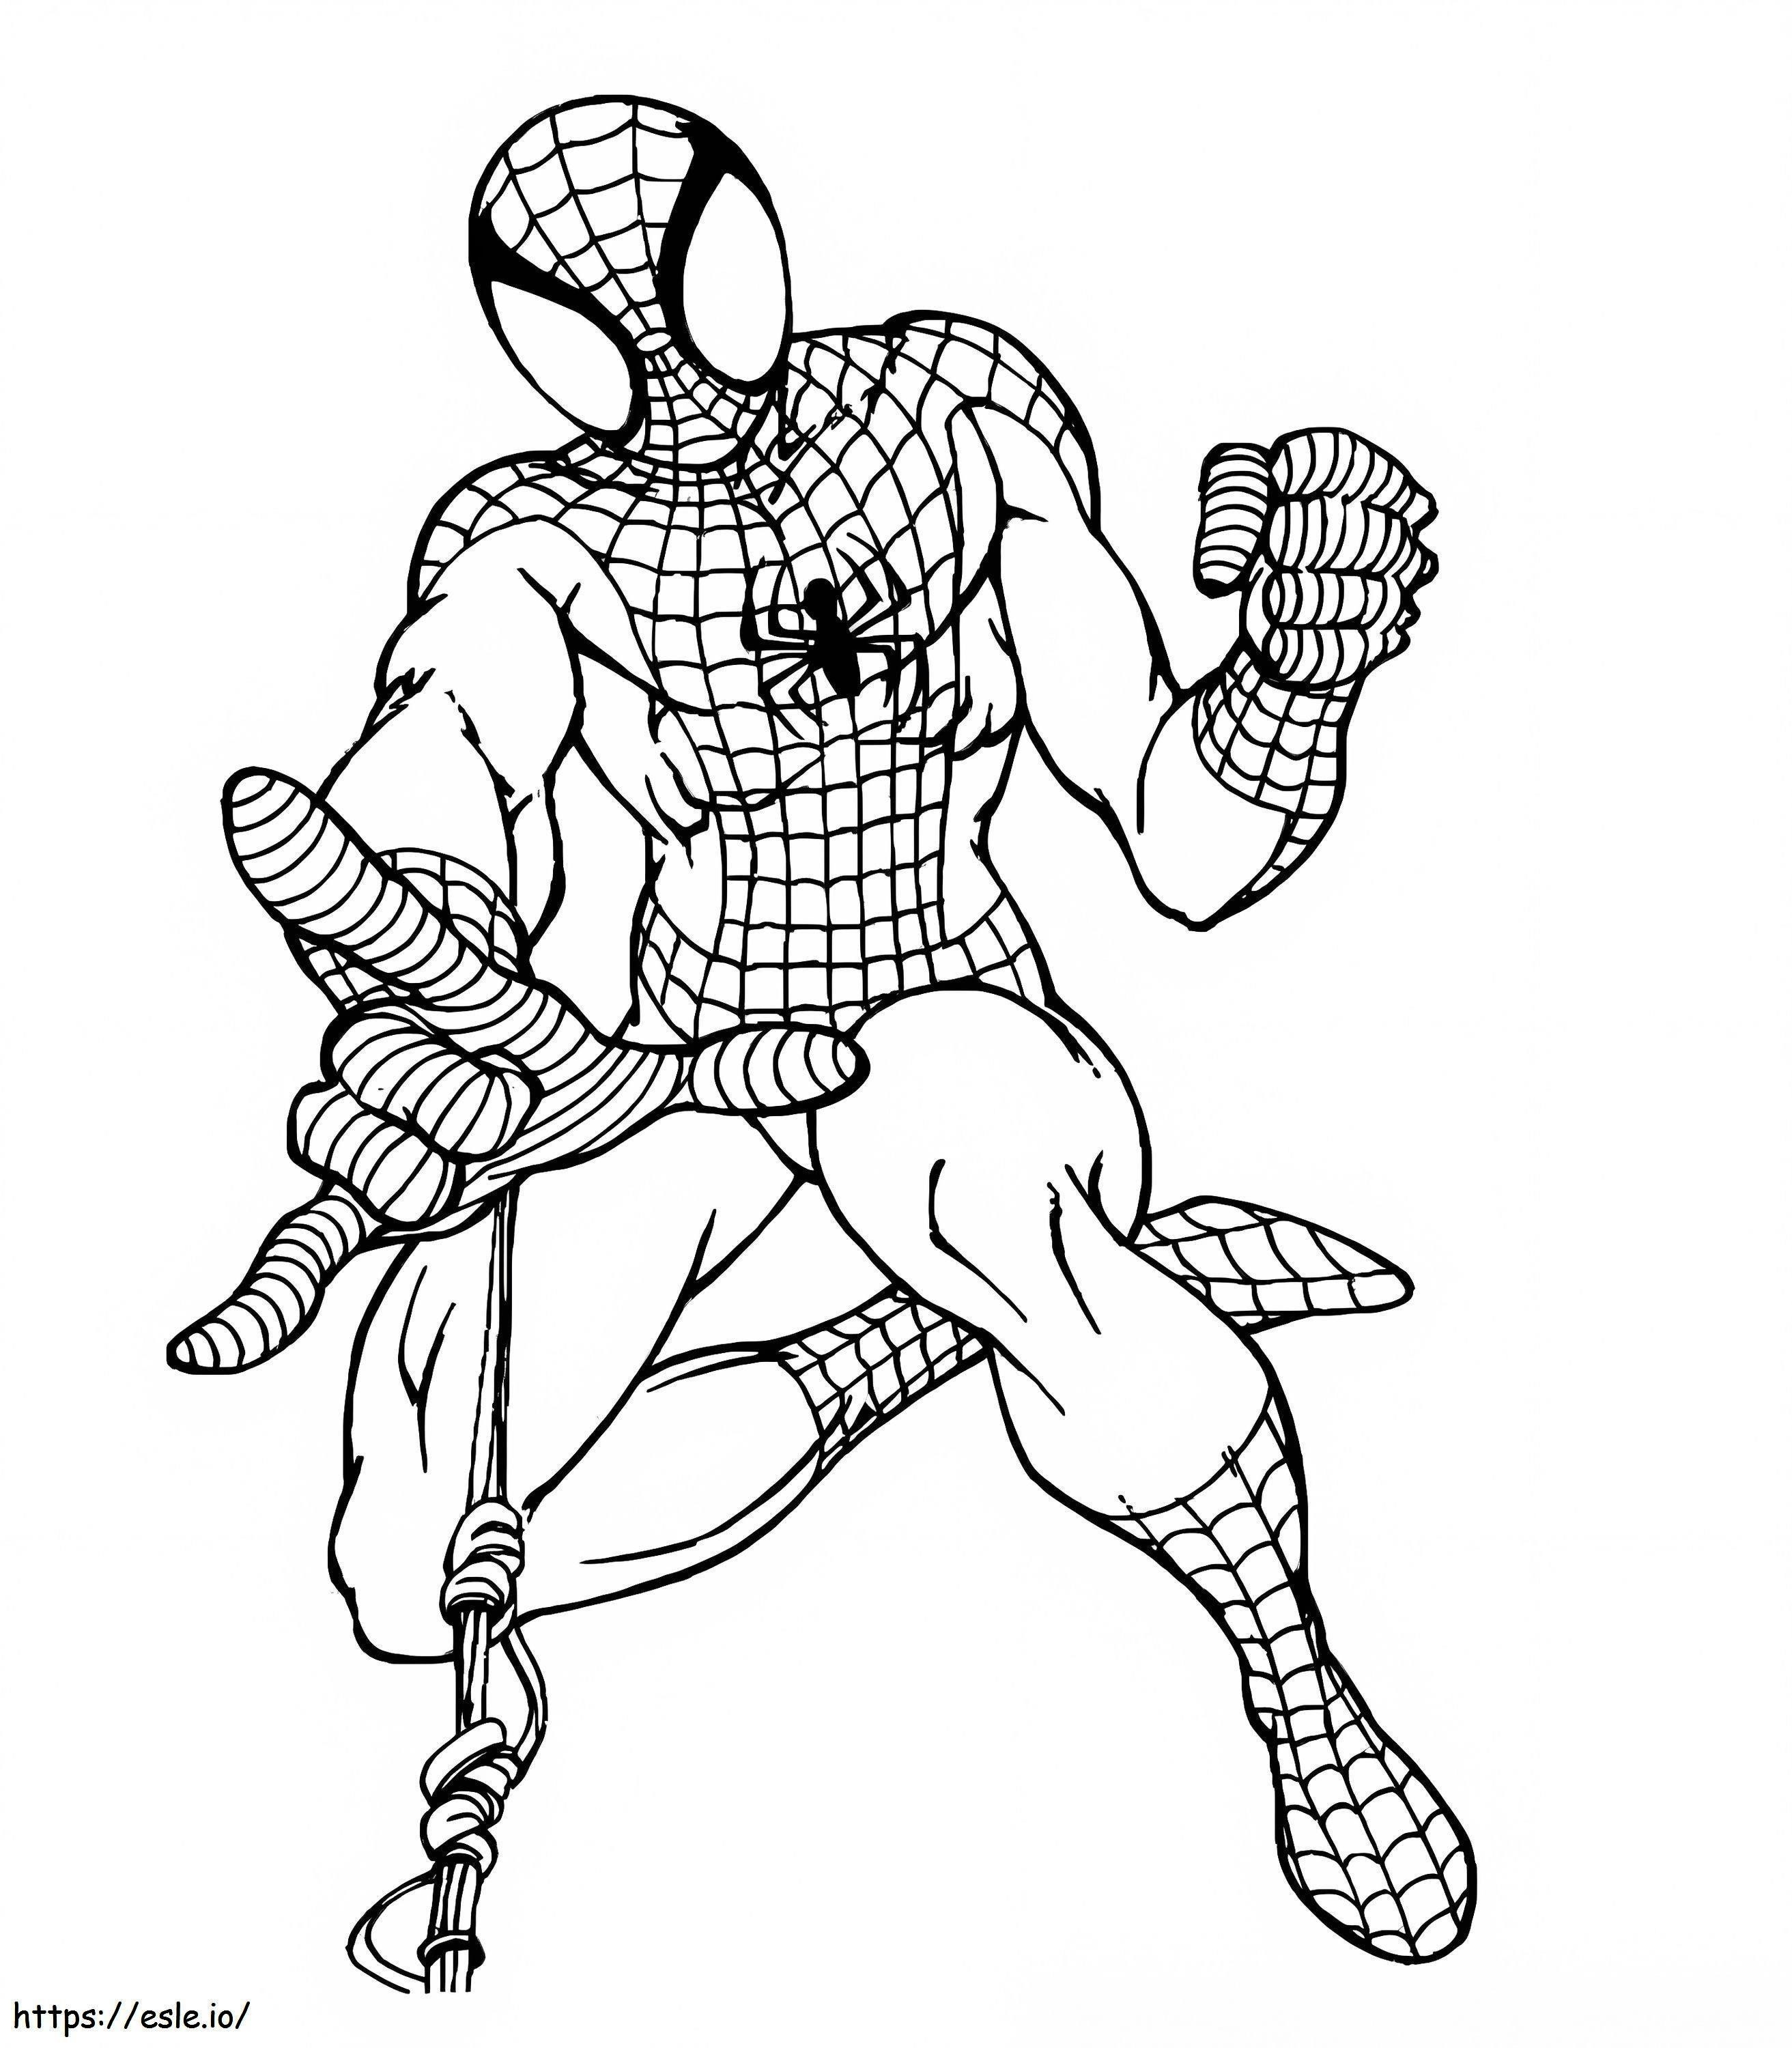 Einfache Zeichnung von Spider Man ausmalbilder